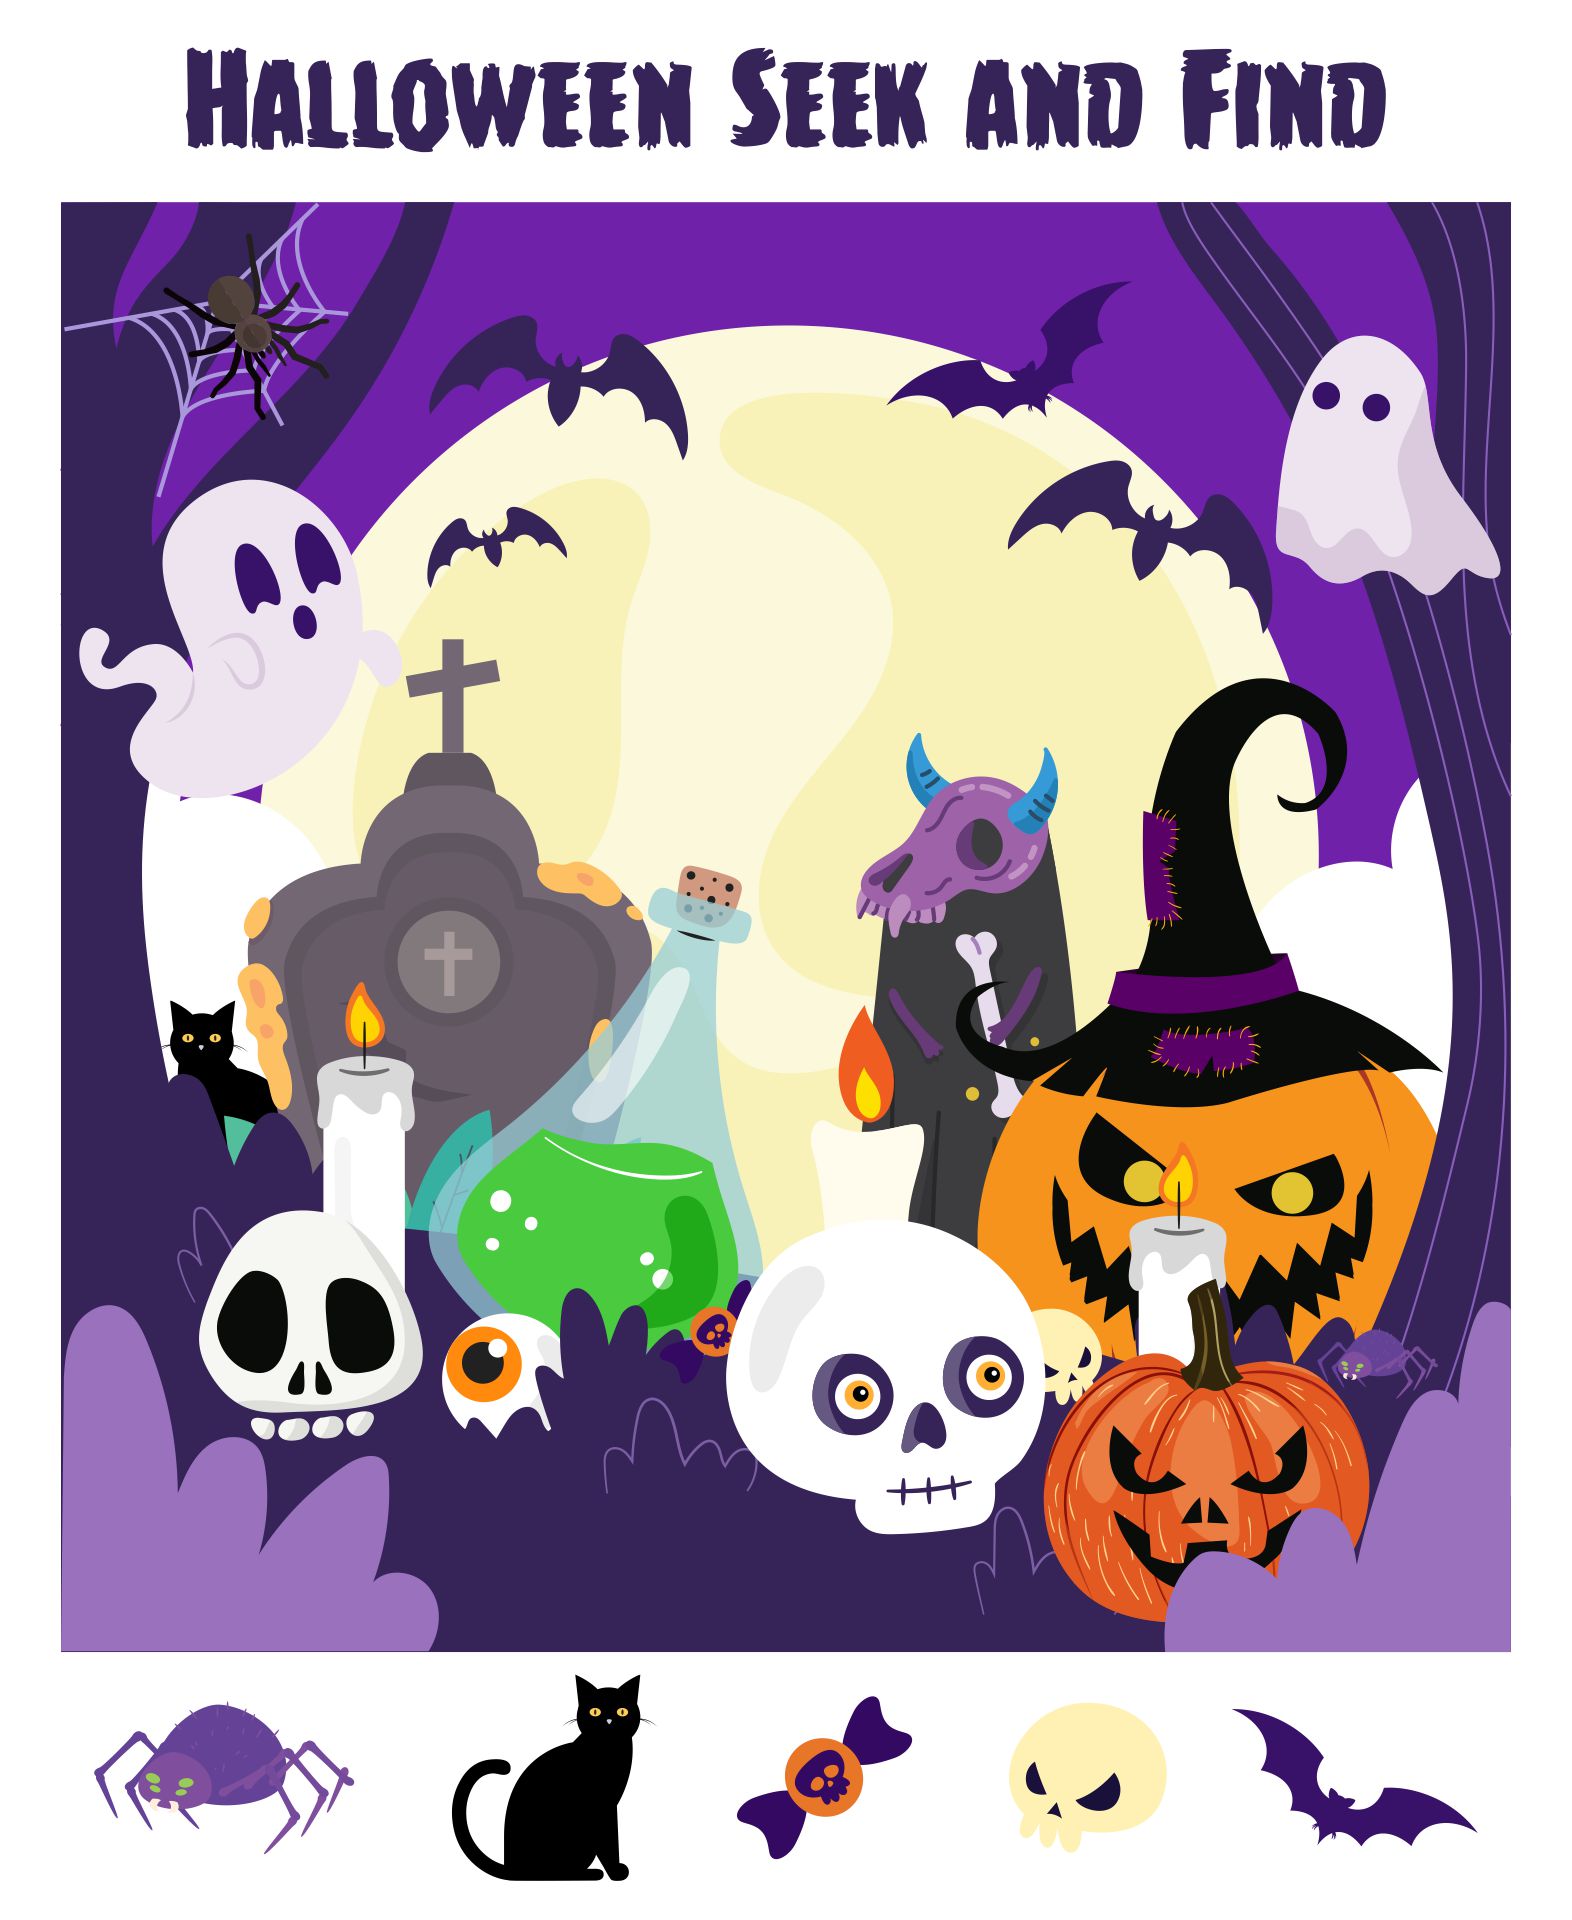 Halloween Seek And Find Printable Game